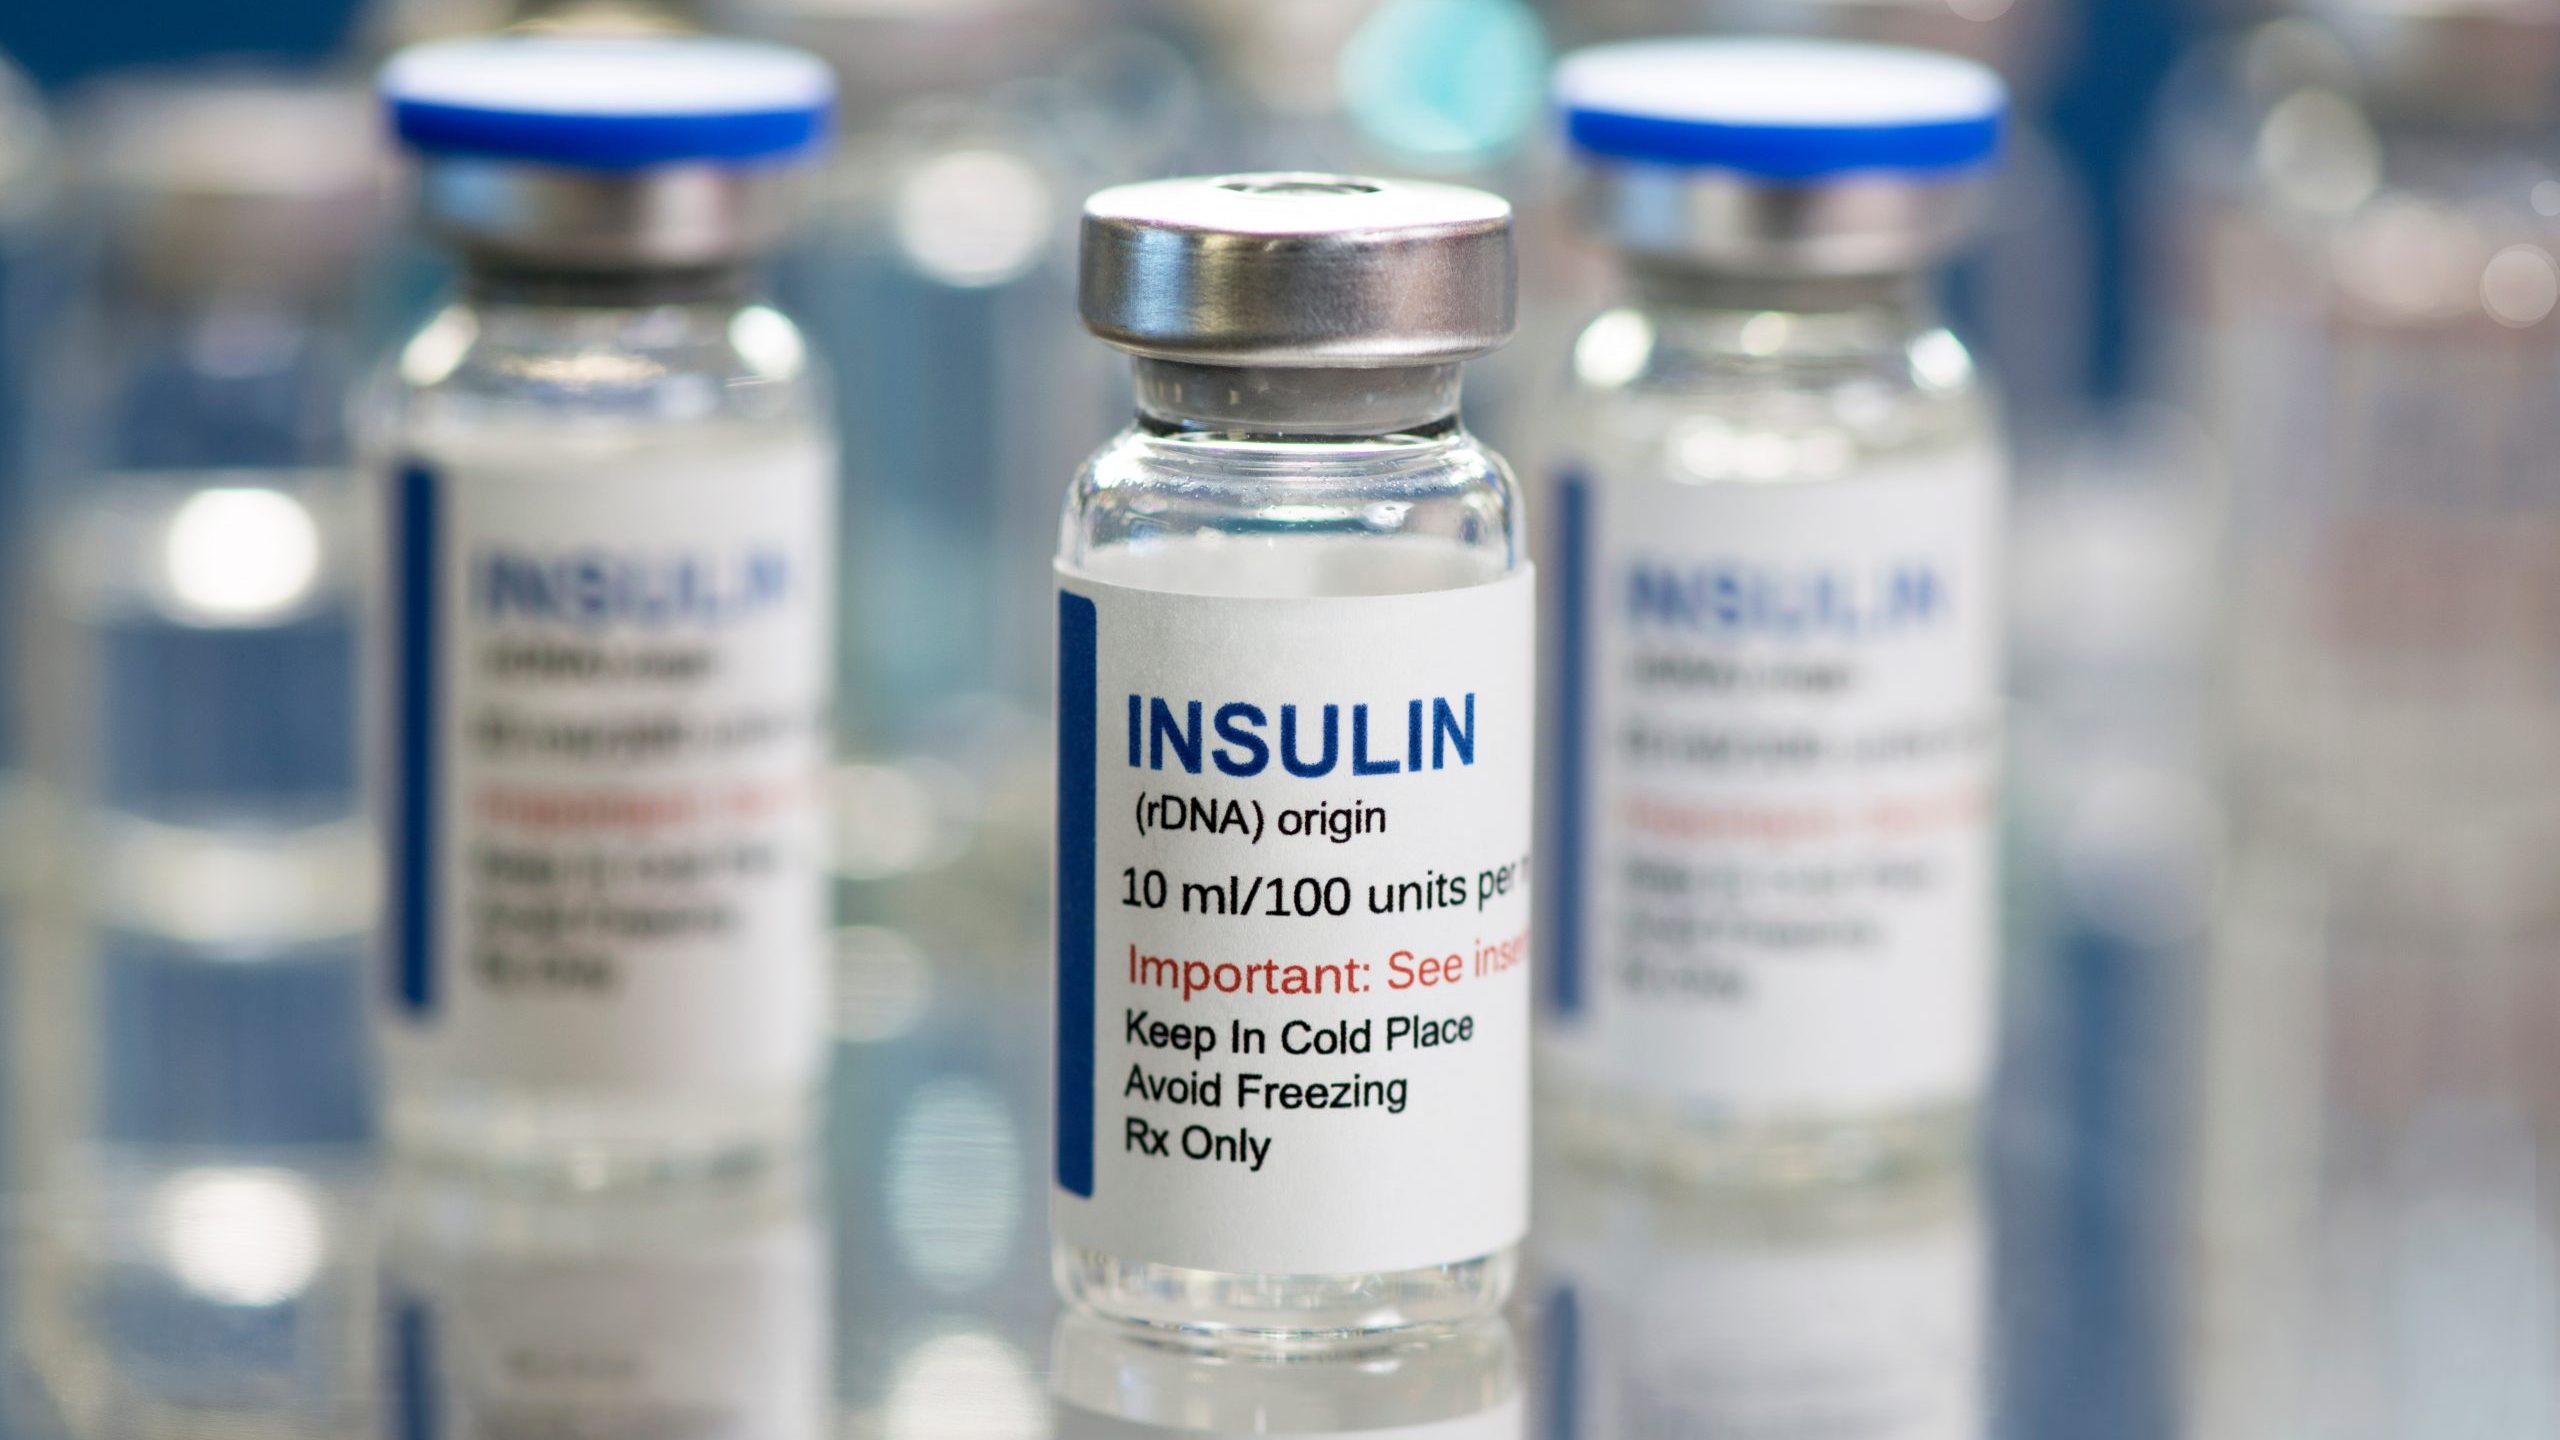 Insulin vials